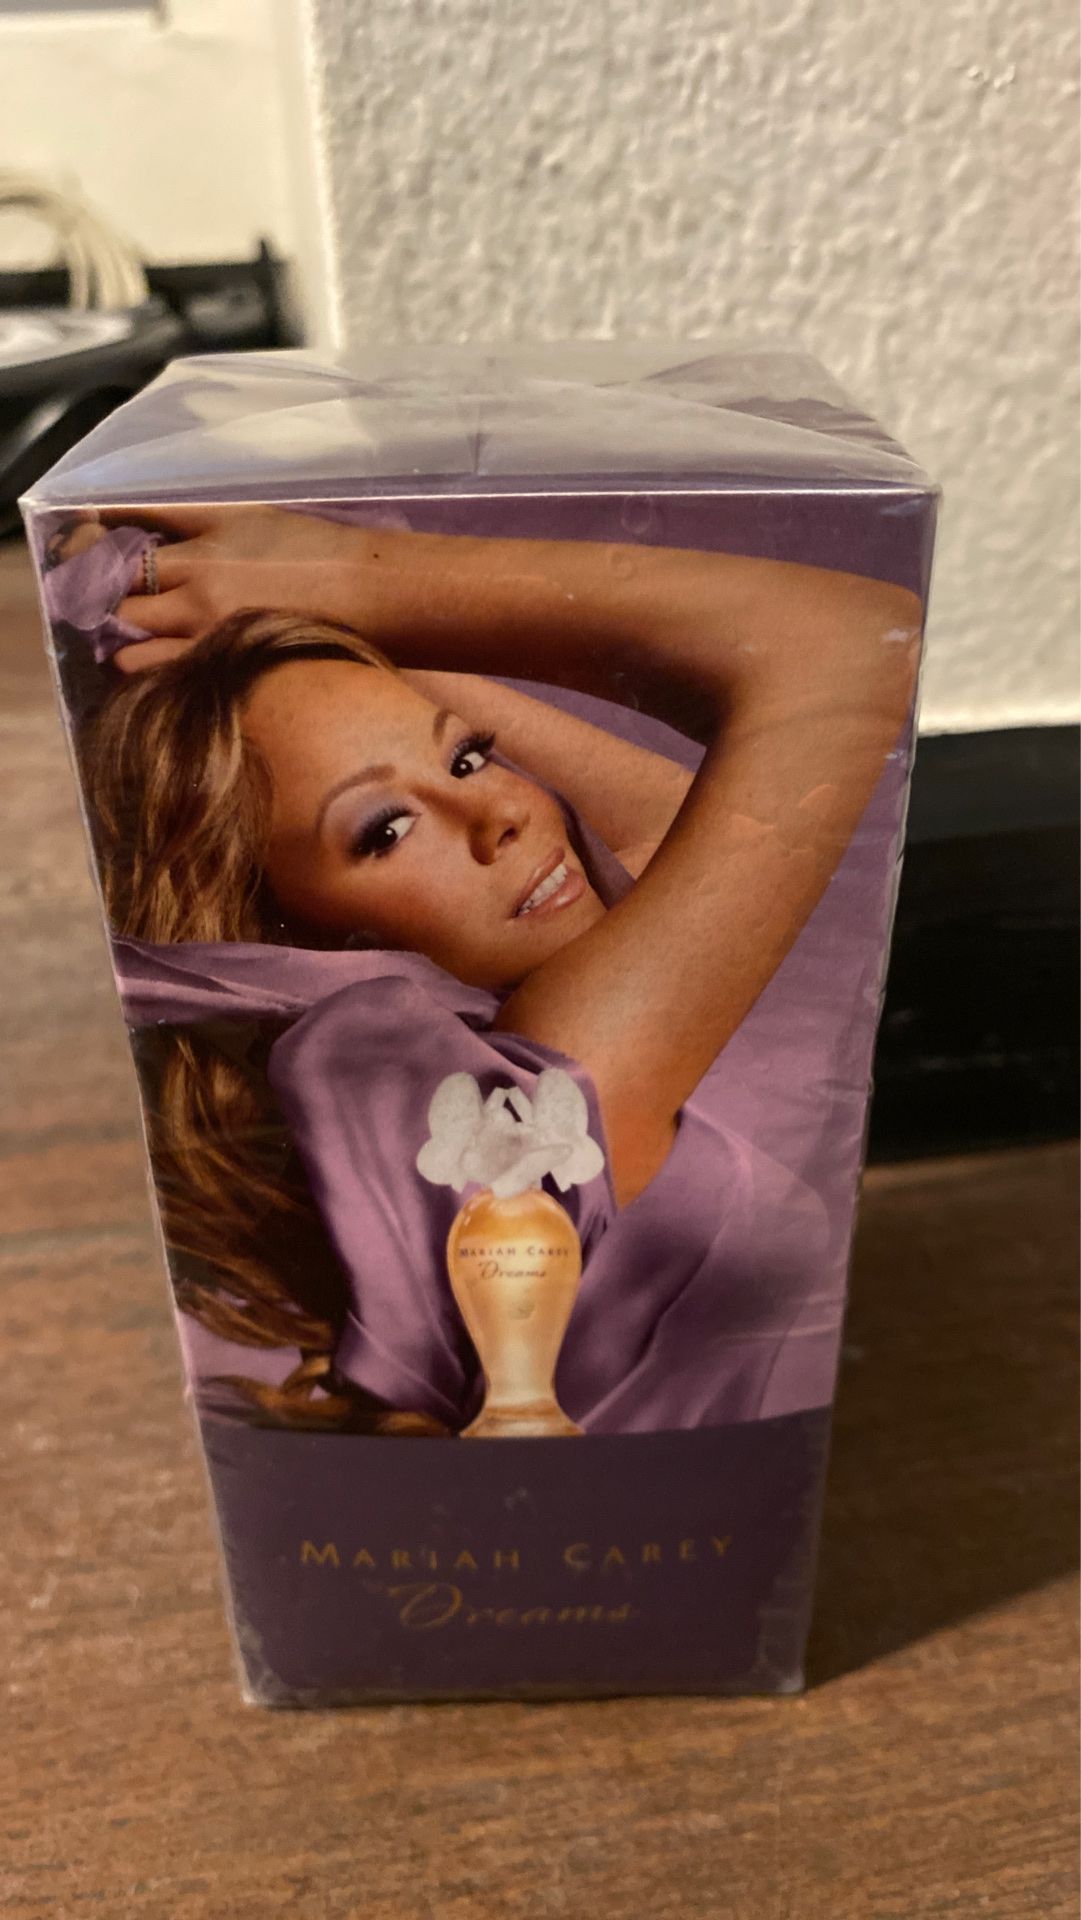 Mariah Carey Dreams perfume 1.7floz